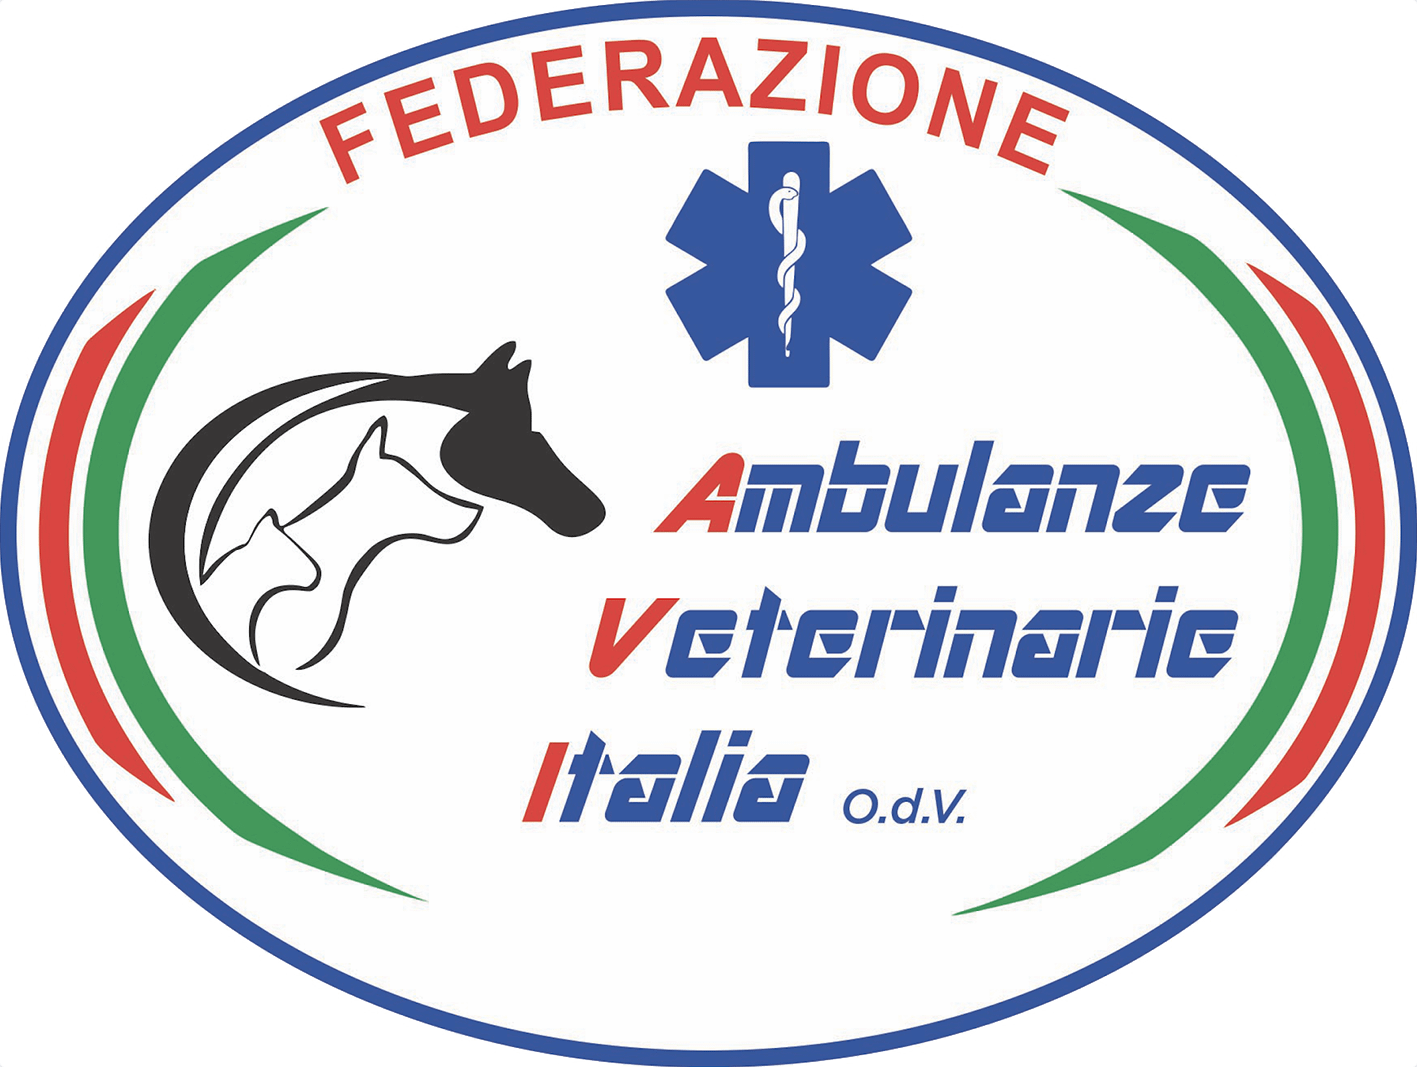 Ambulanze Veterinarie Italia OdV